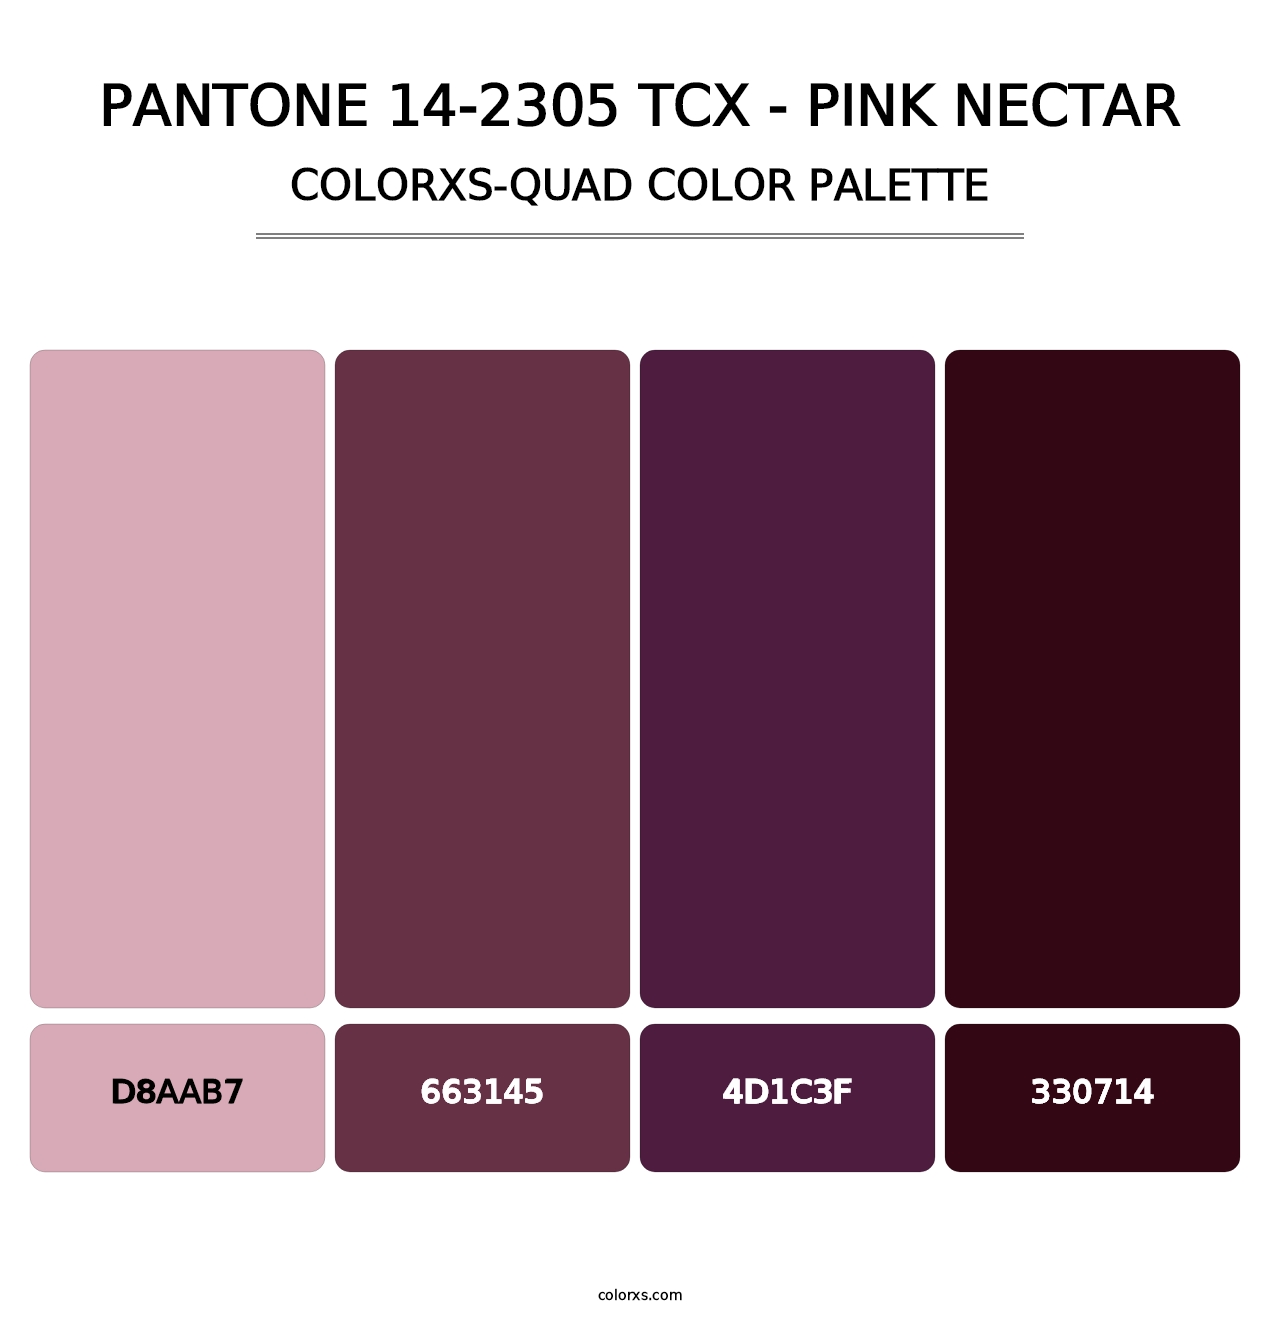 PANTONE 14-2305 TCX - Pink Nectar - Colorxs Quad Palette